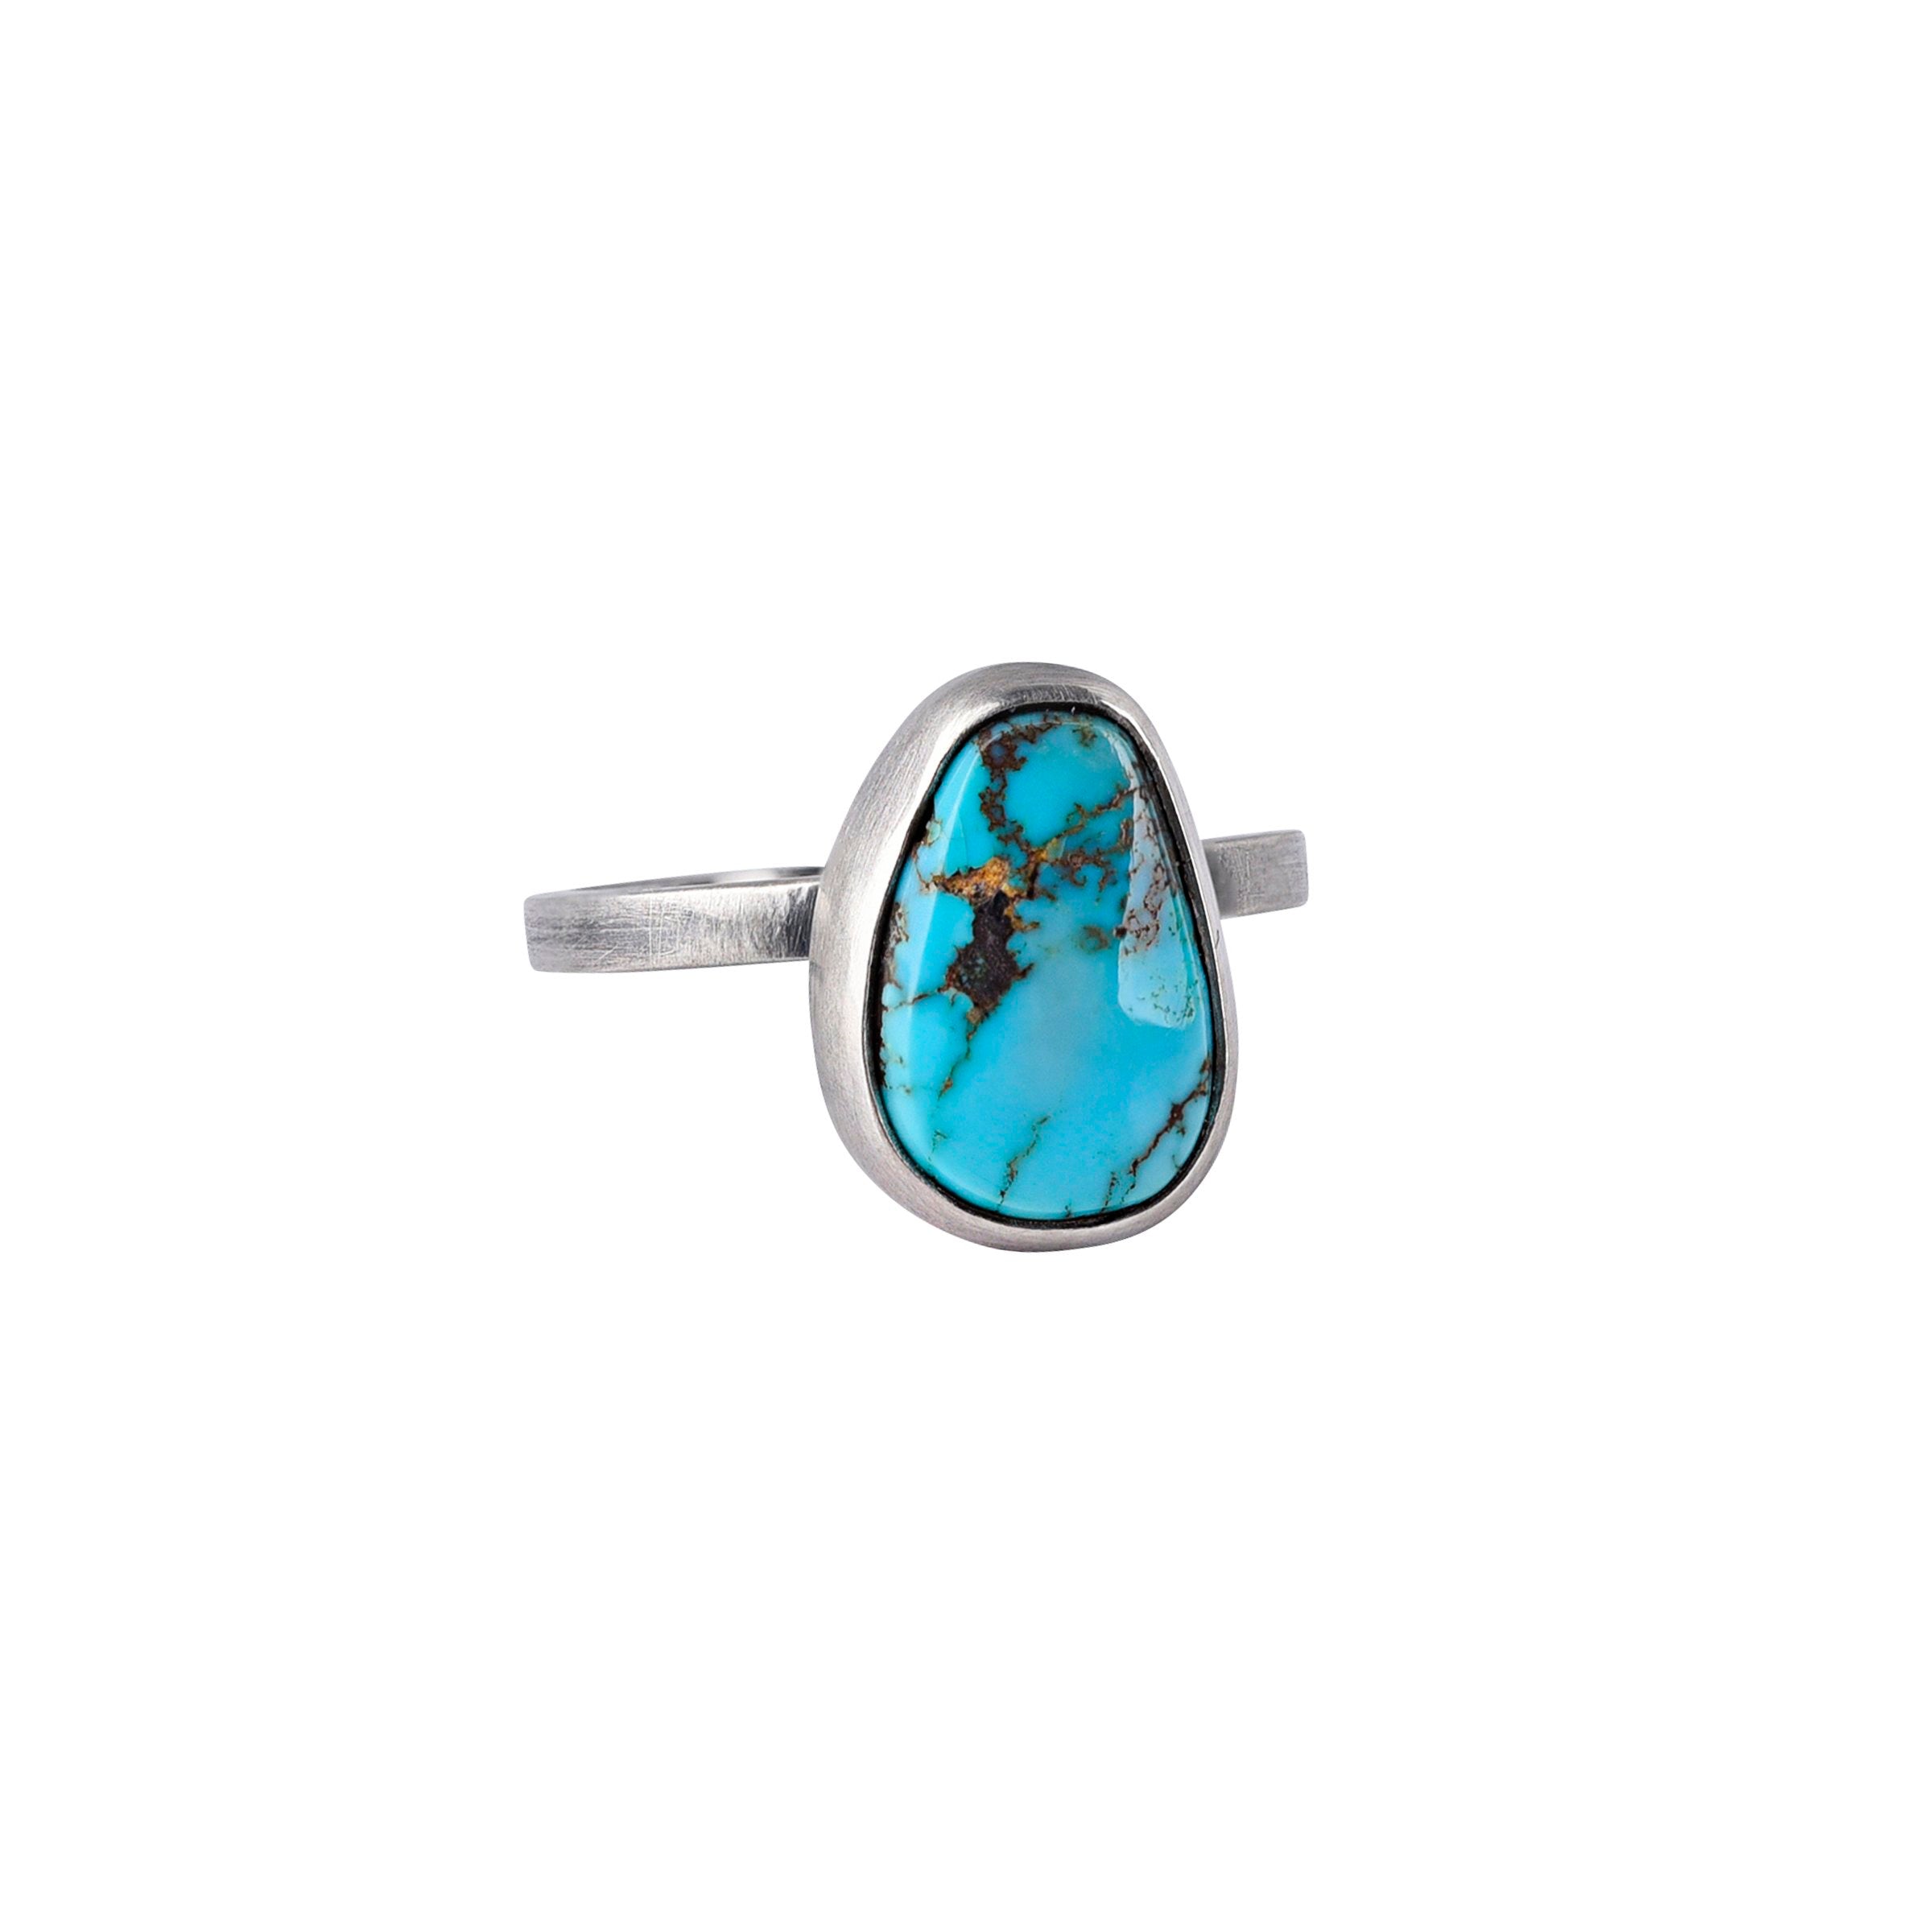 Turquoise Nomad Ring - Size 7